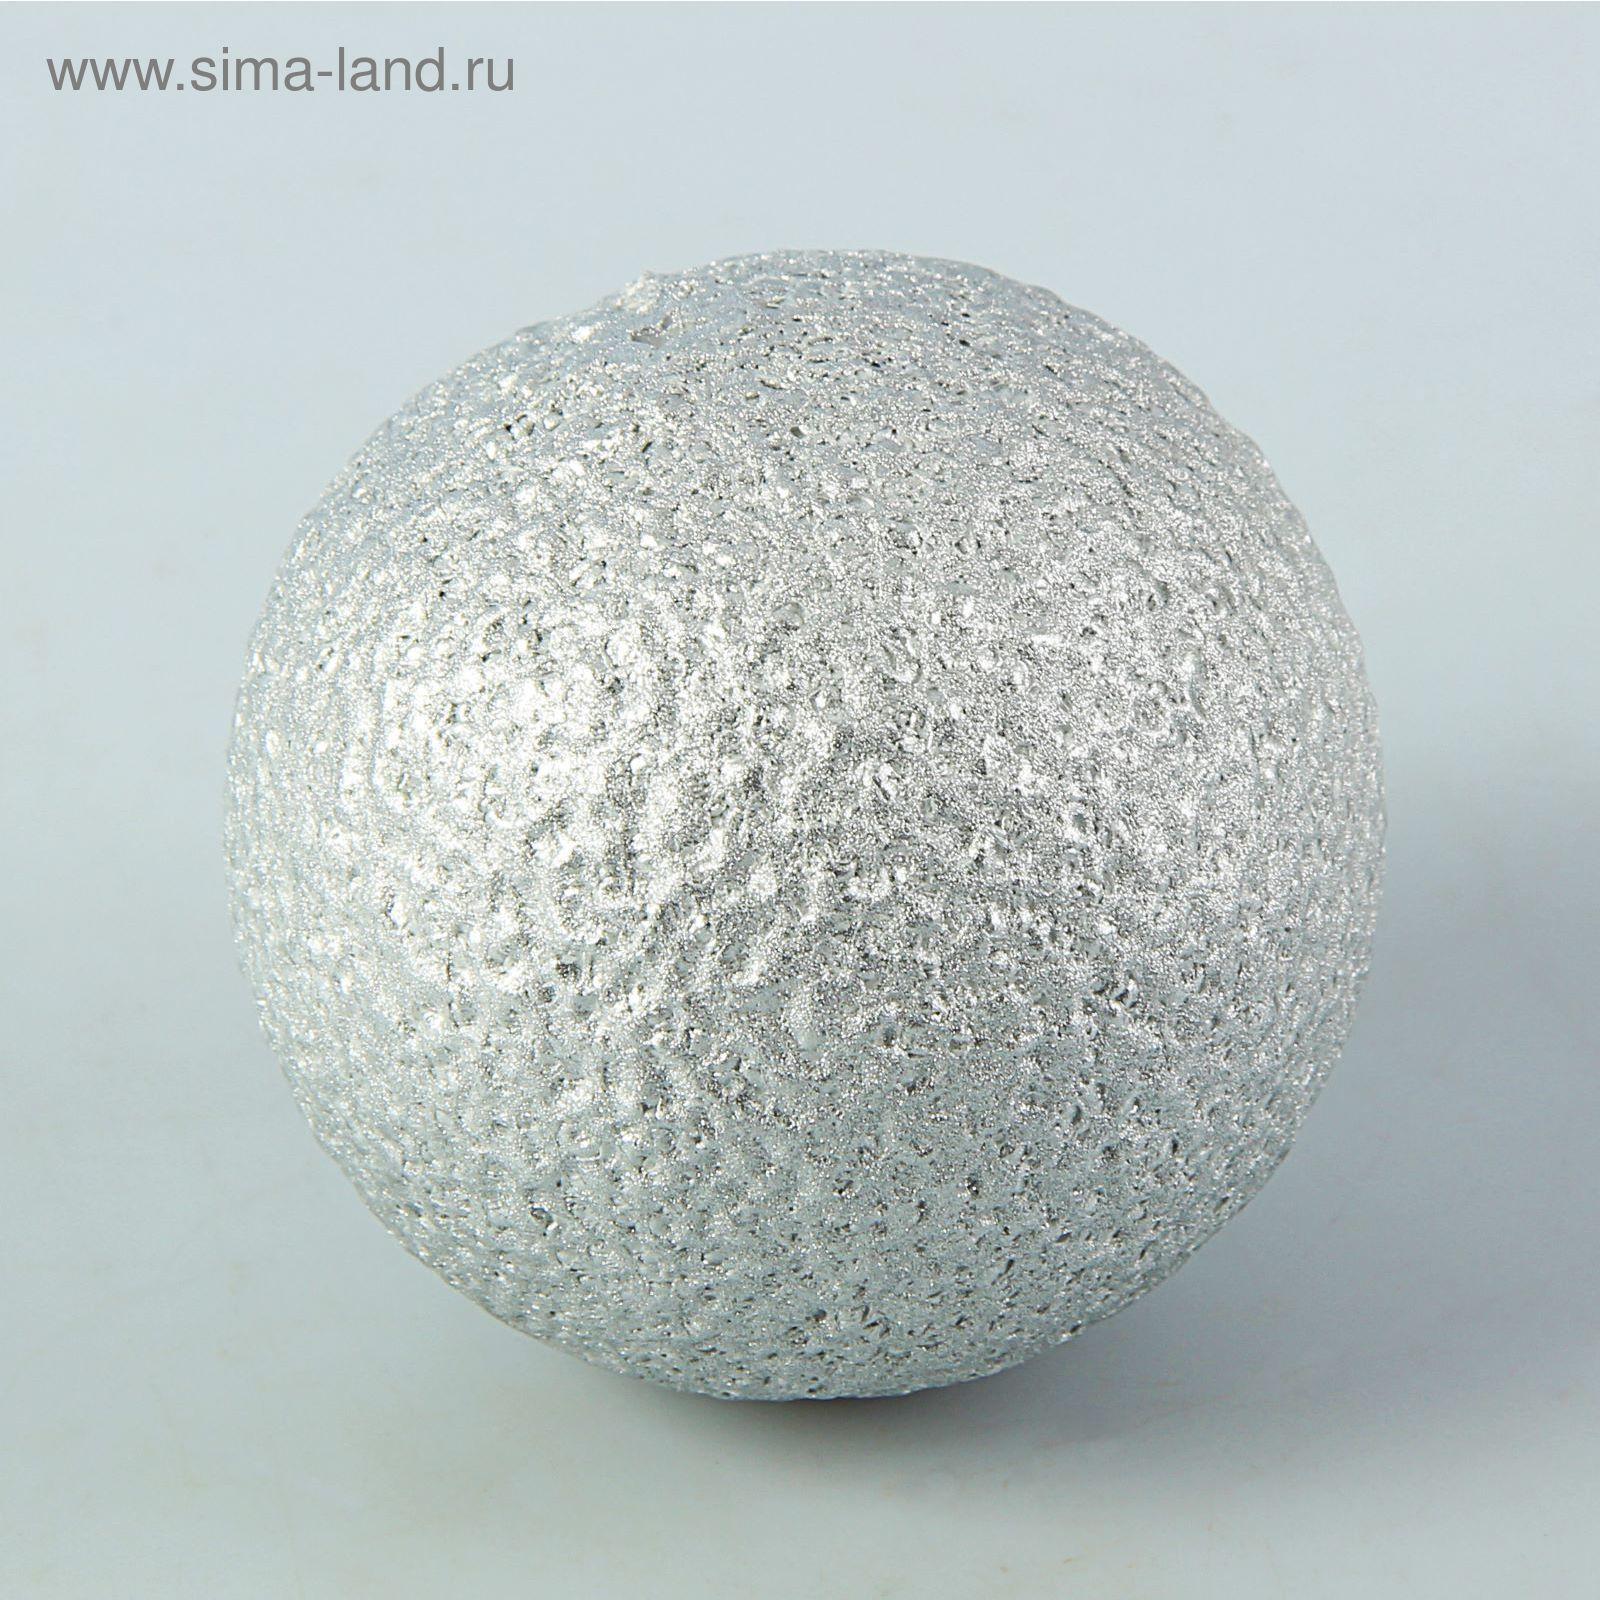 Шар из пенопласта 8 см, серебряный